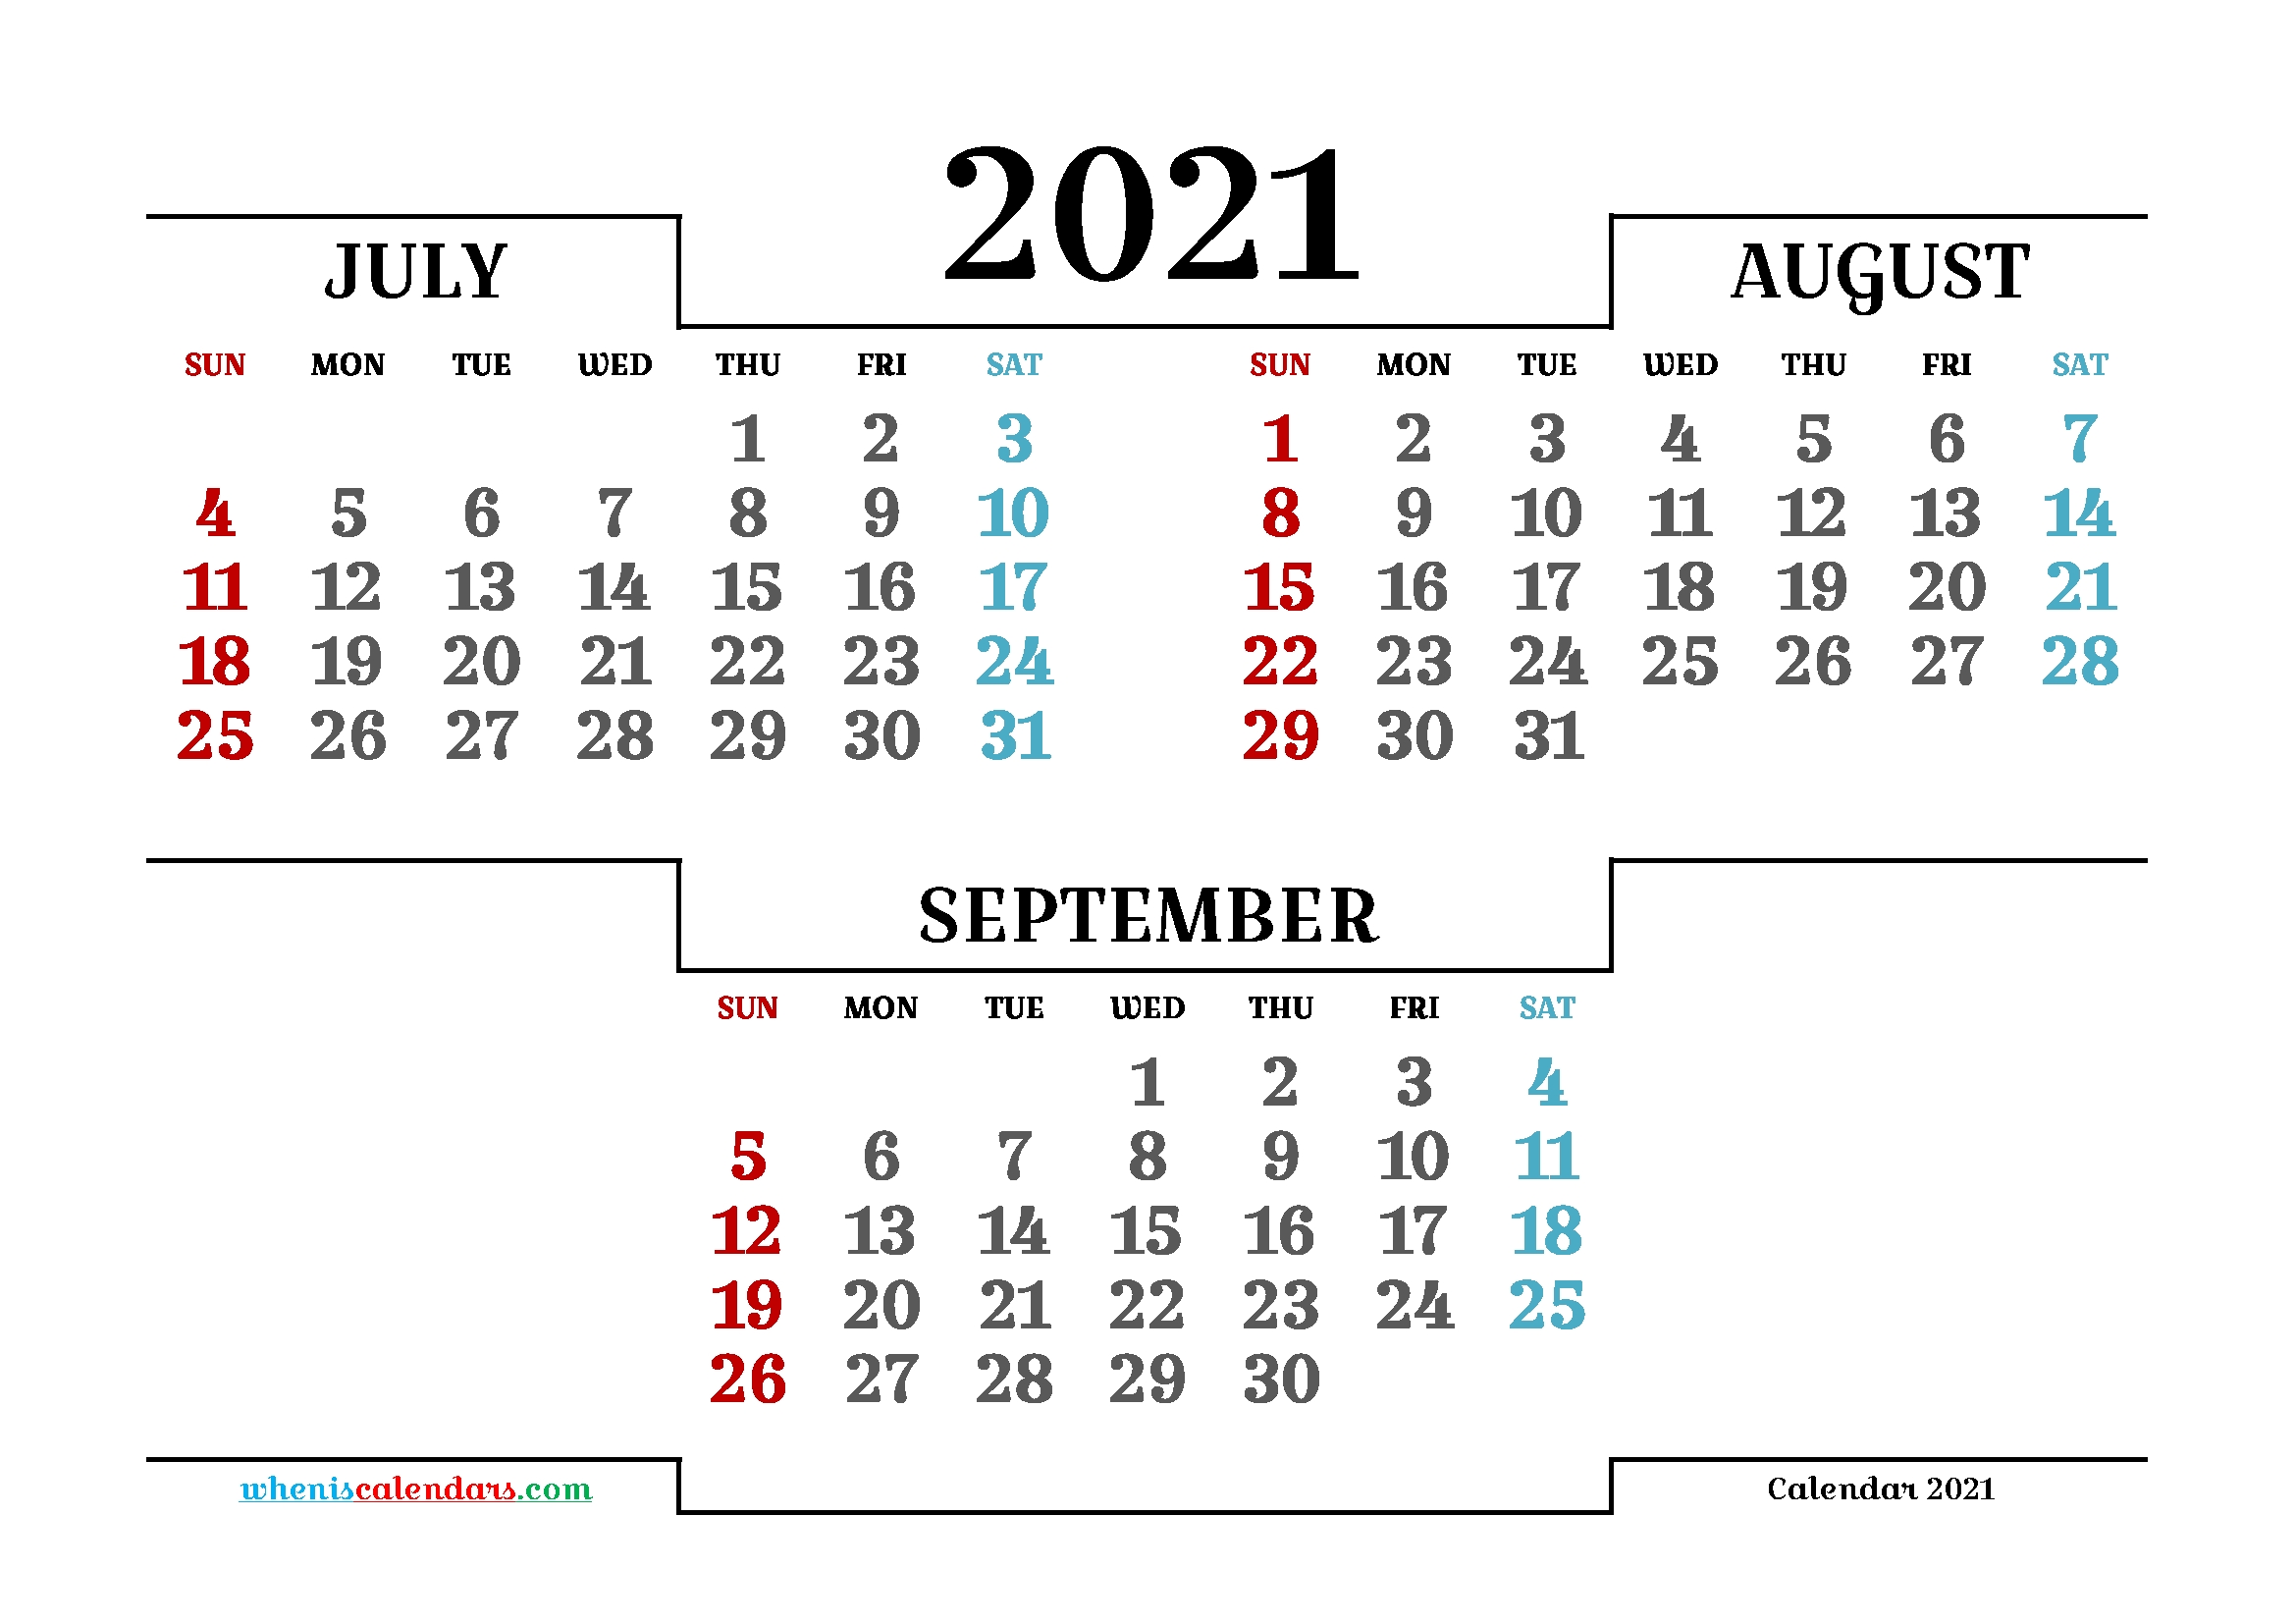 Календарь август сентябрь. Календарь июль август. Календарь август сентябрь 2021. Календарь август 2021. Календарь июль август сентябрь 2021.